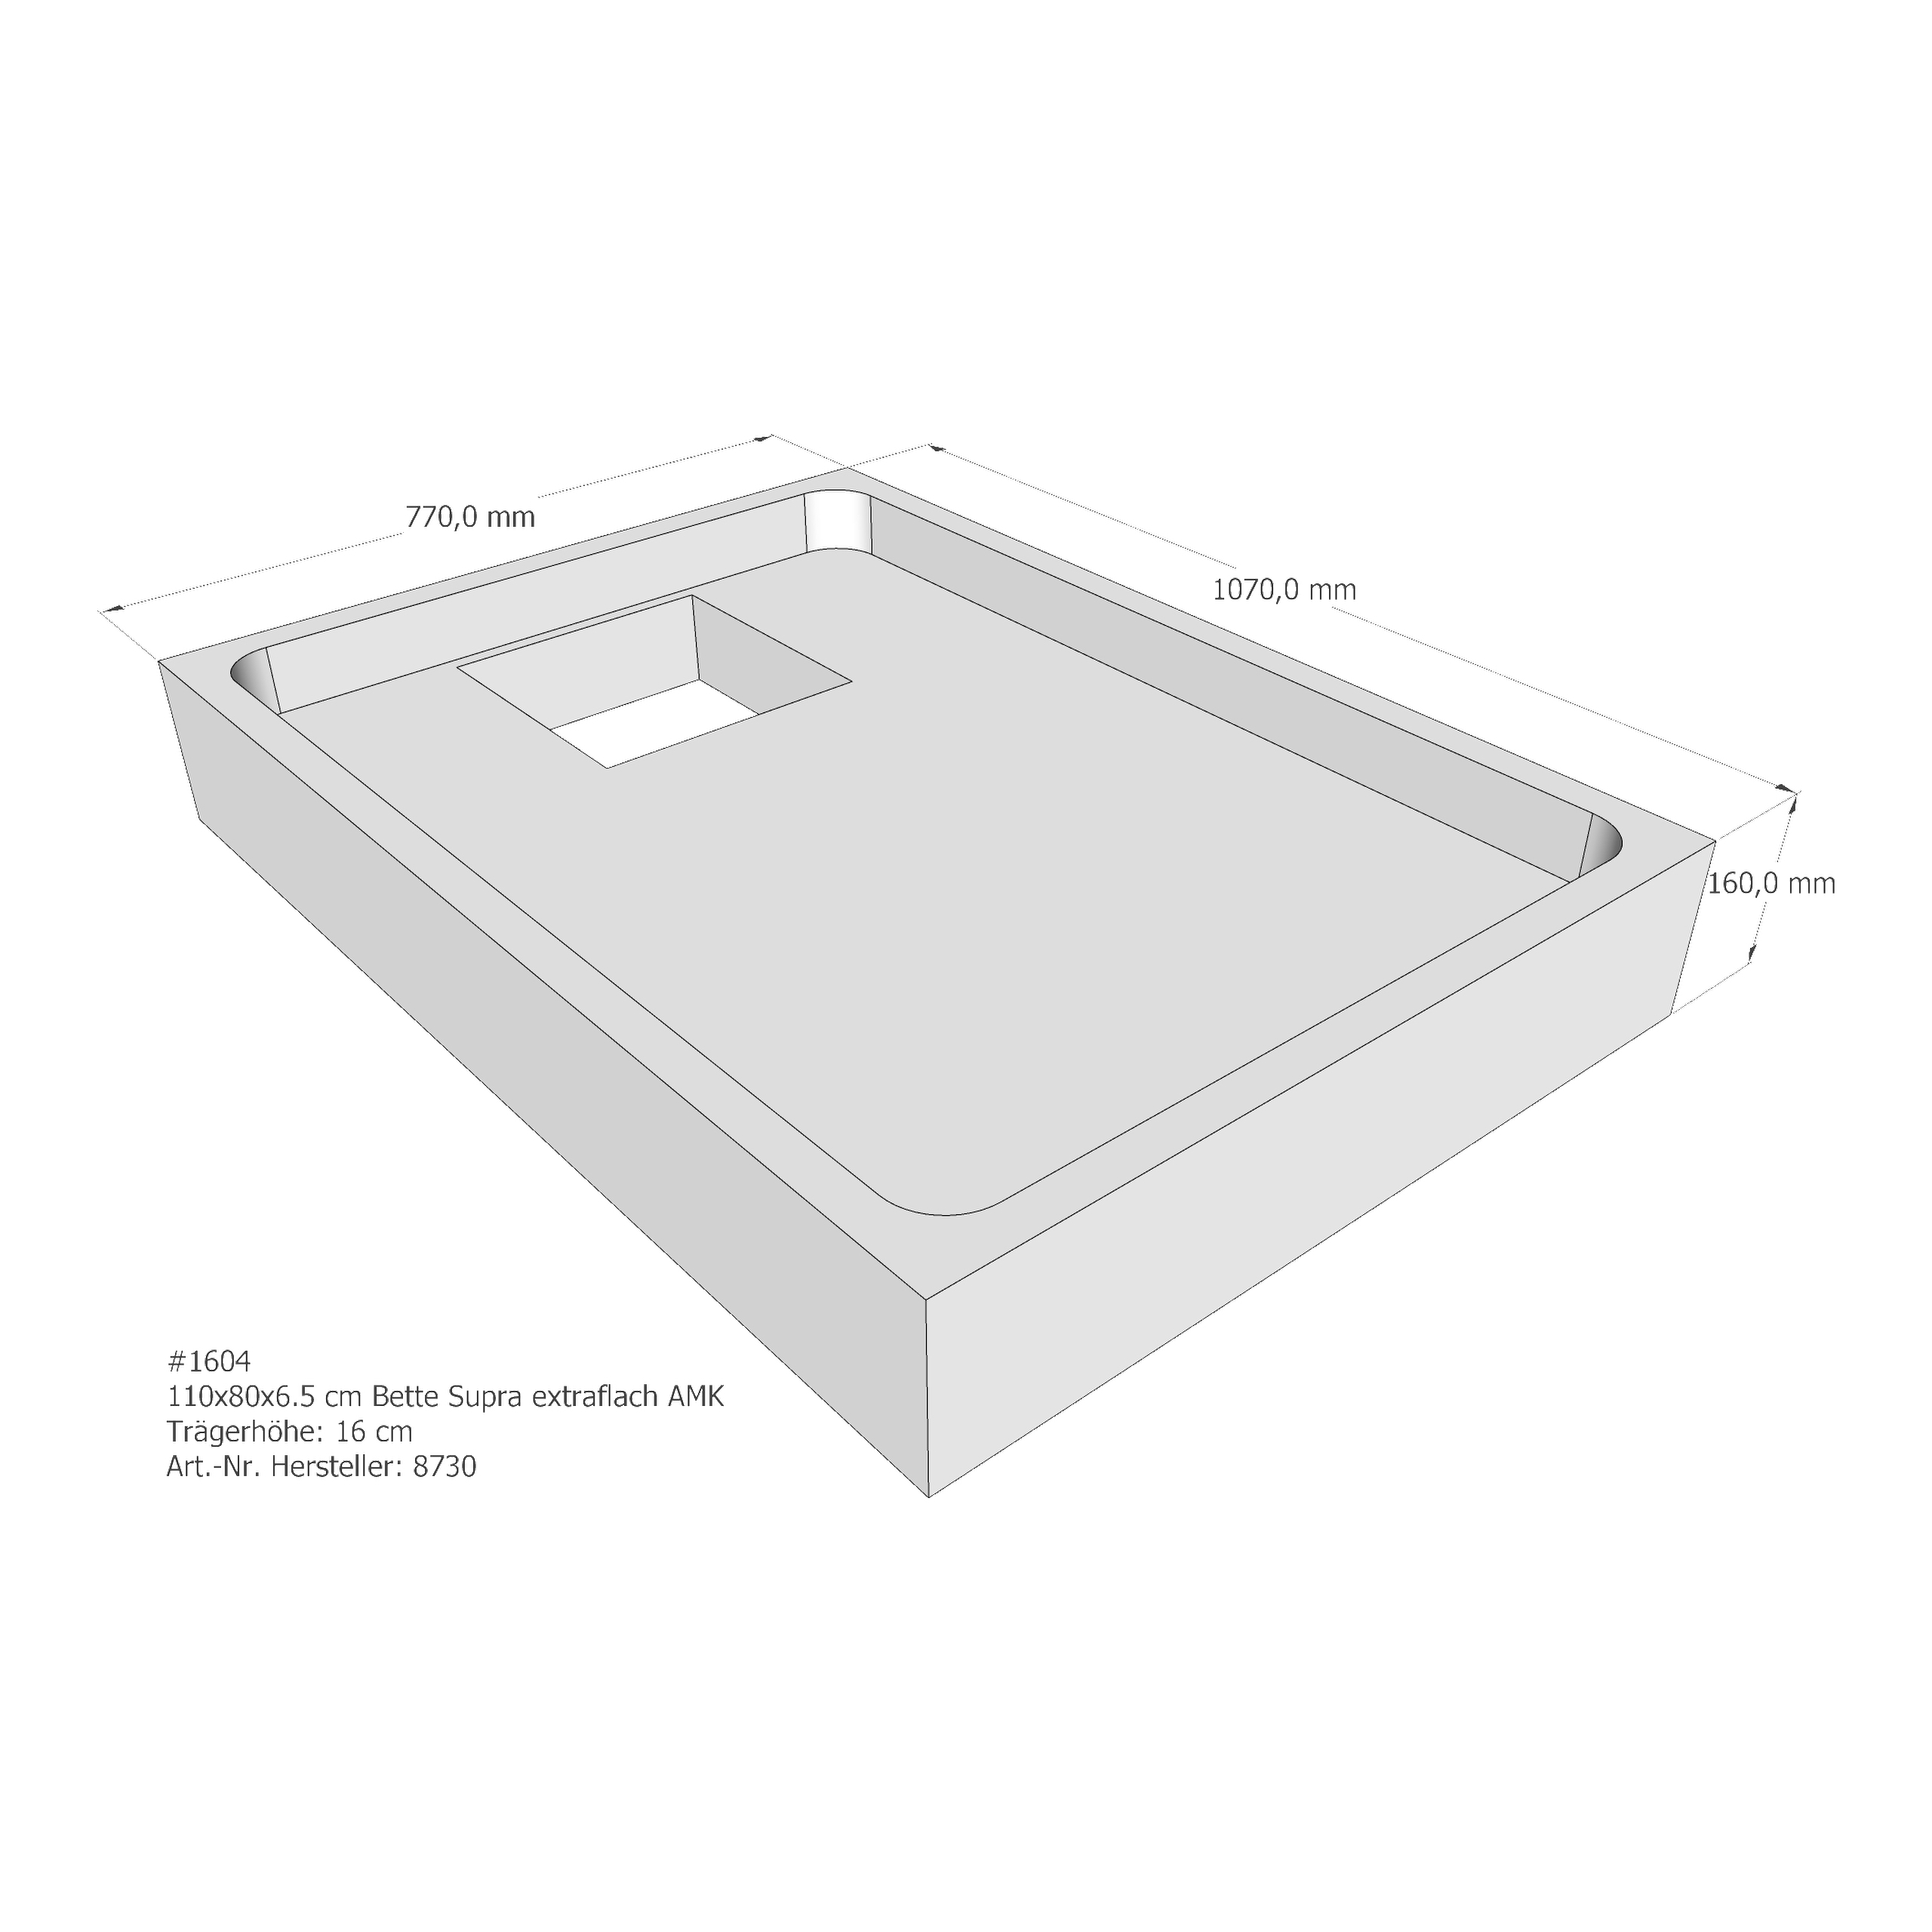 Duschwannenträger für Bette BetteSupra (extraflach) 110 × 80 × 6,5 cm